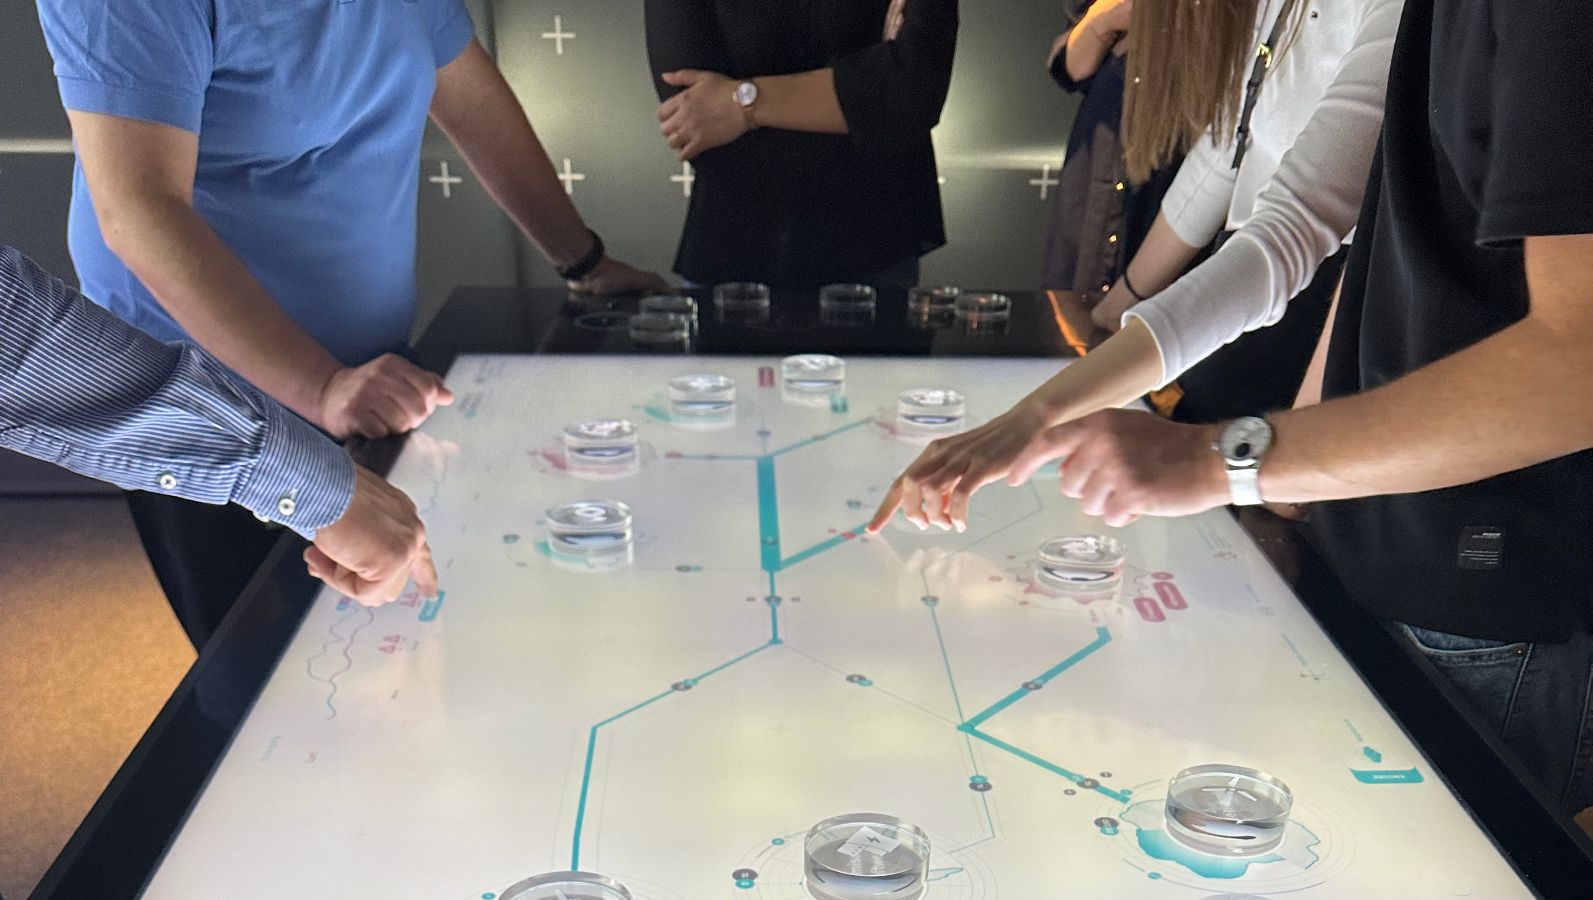 Das Bild zeigt die Hände und Arme mehrerer Personen, die auf einem interaktiven Tisch Glaselemente hin- und herschieben.